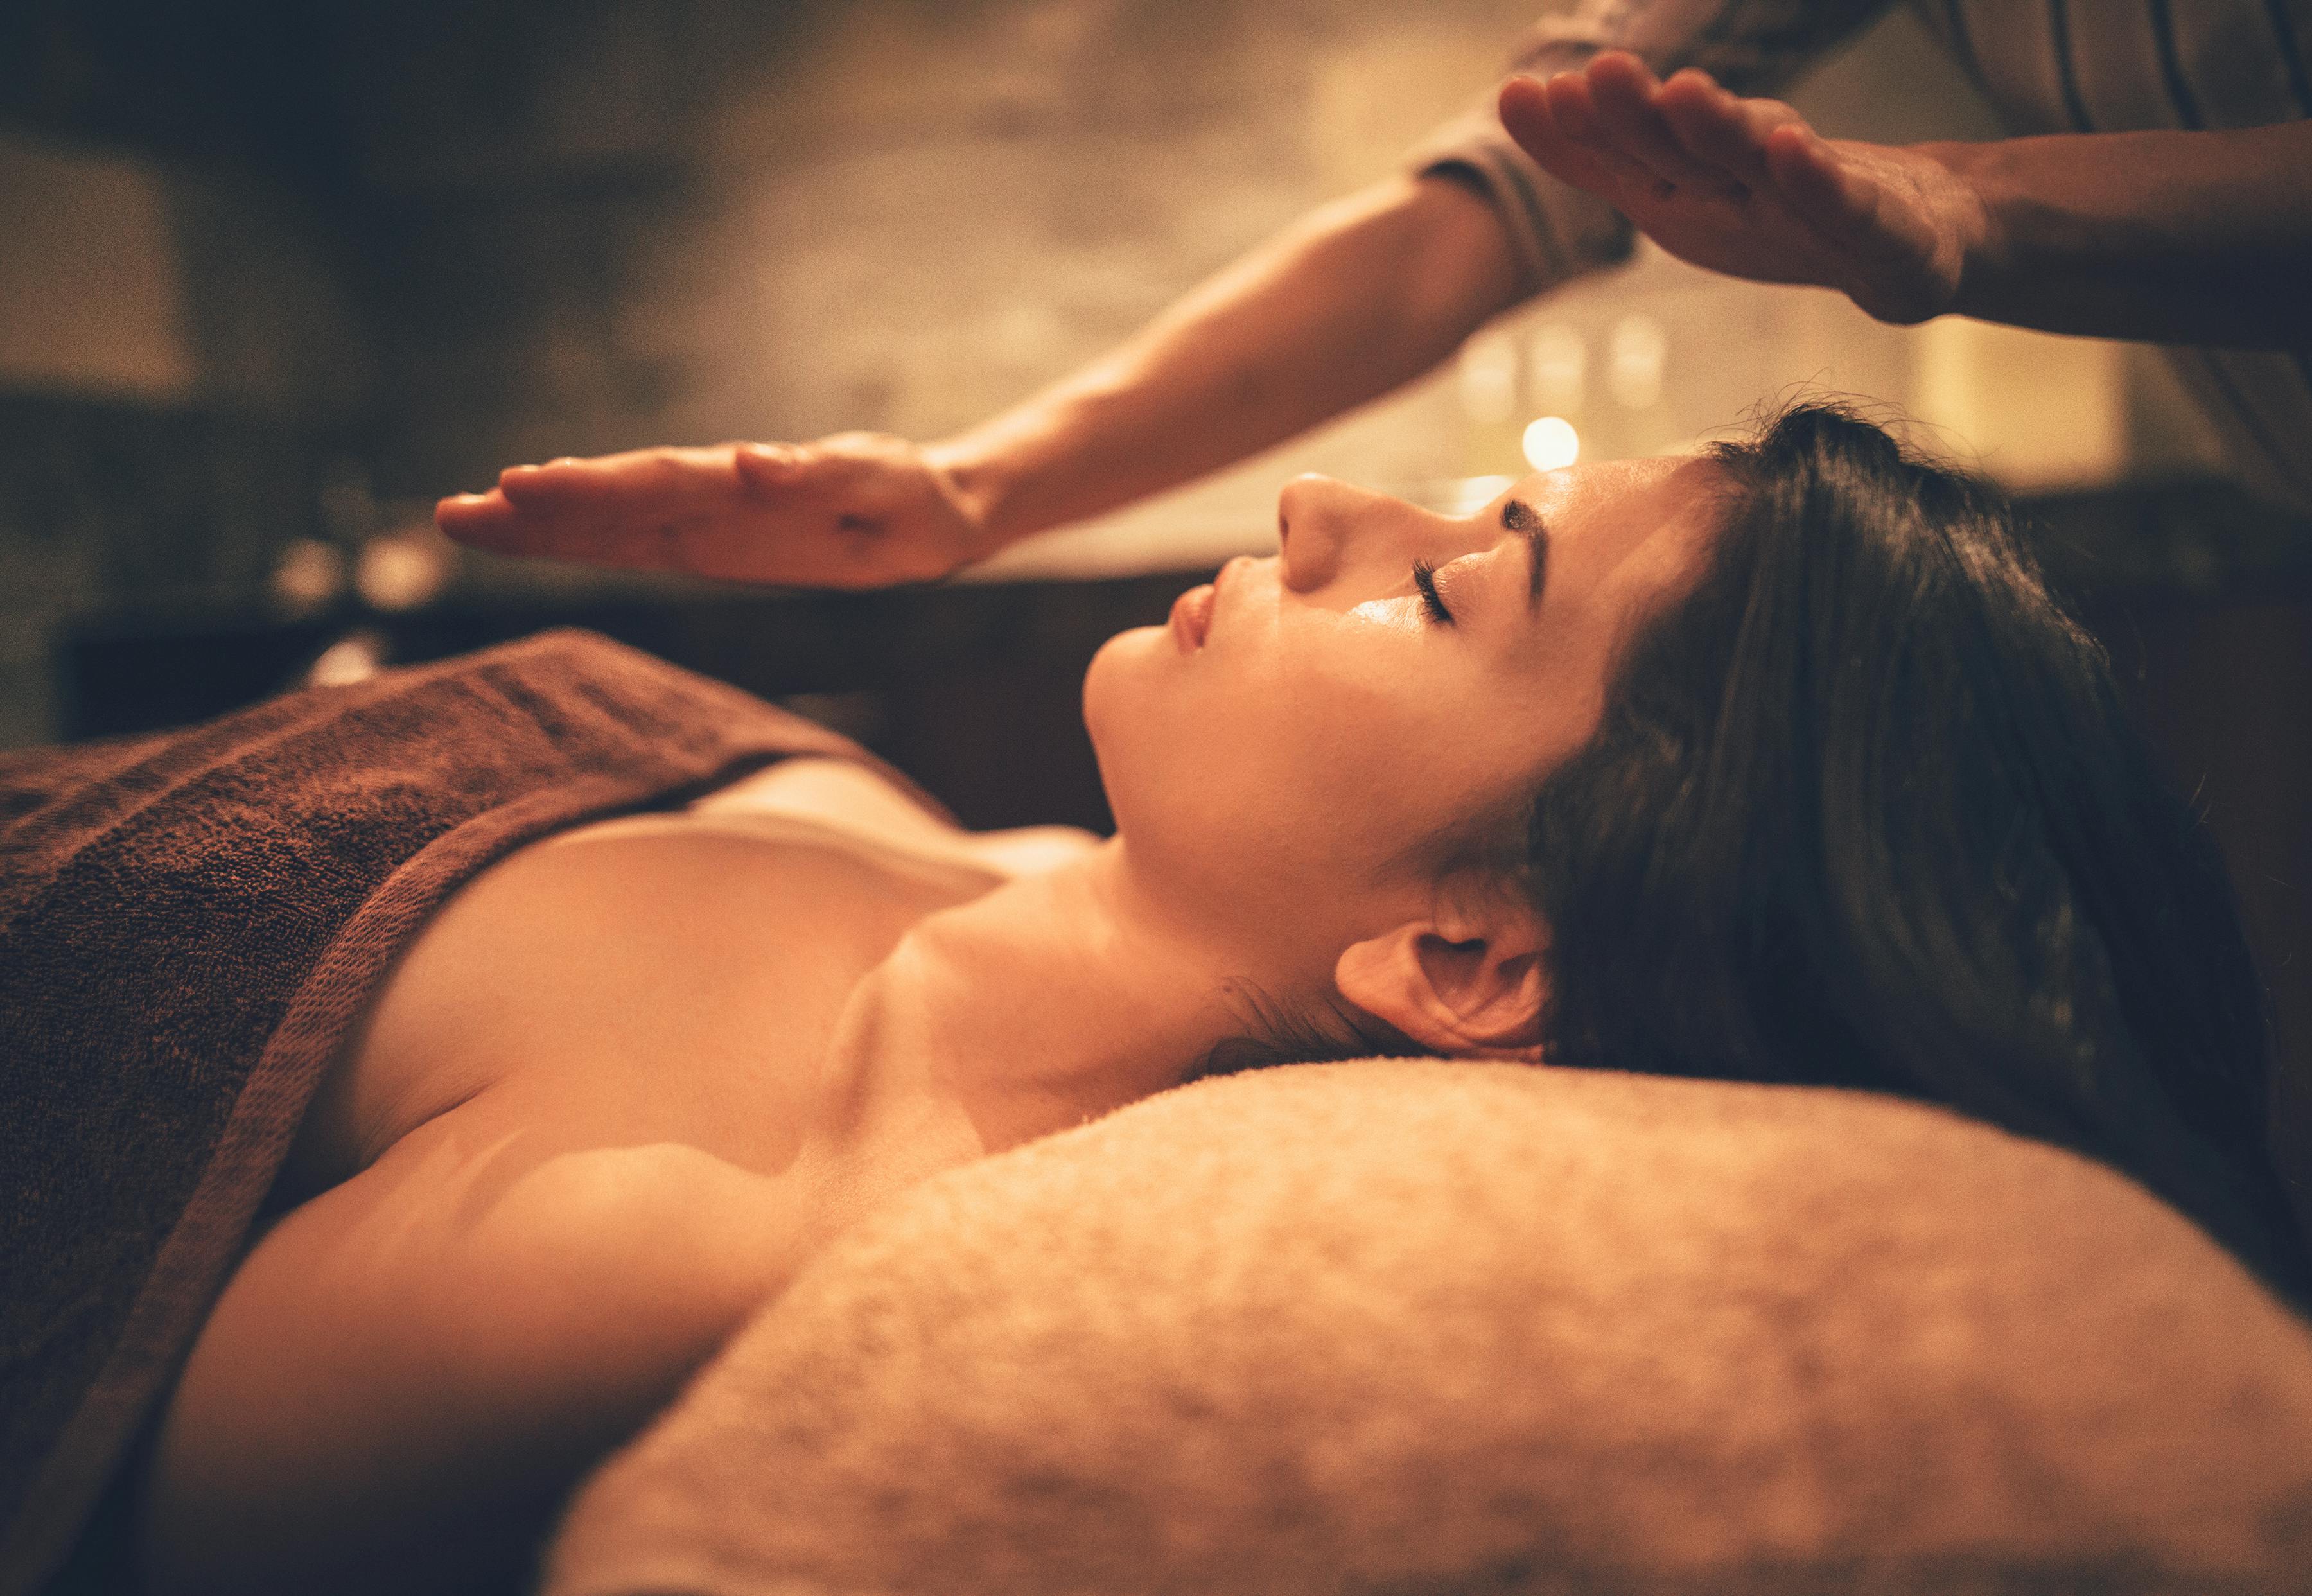 Soin bien être et massage aux pierres chaudes – coaching – programme de coaching – soin énergétique Reiki – LaHoChi.